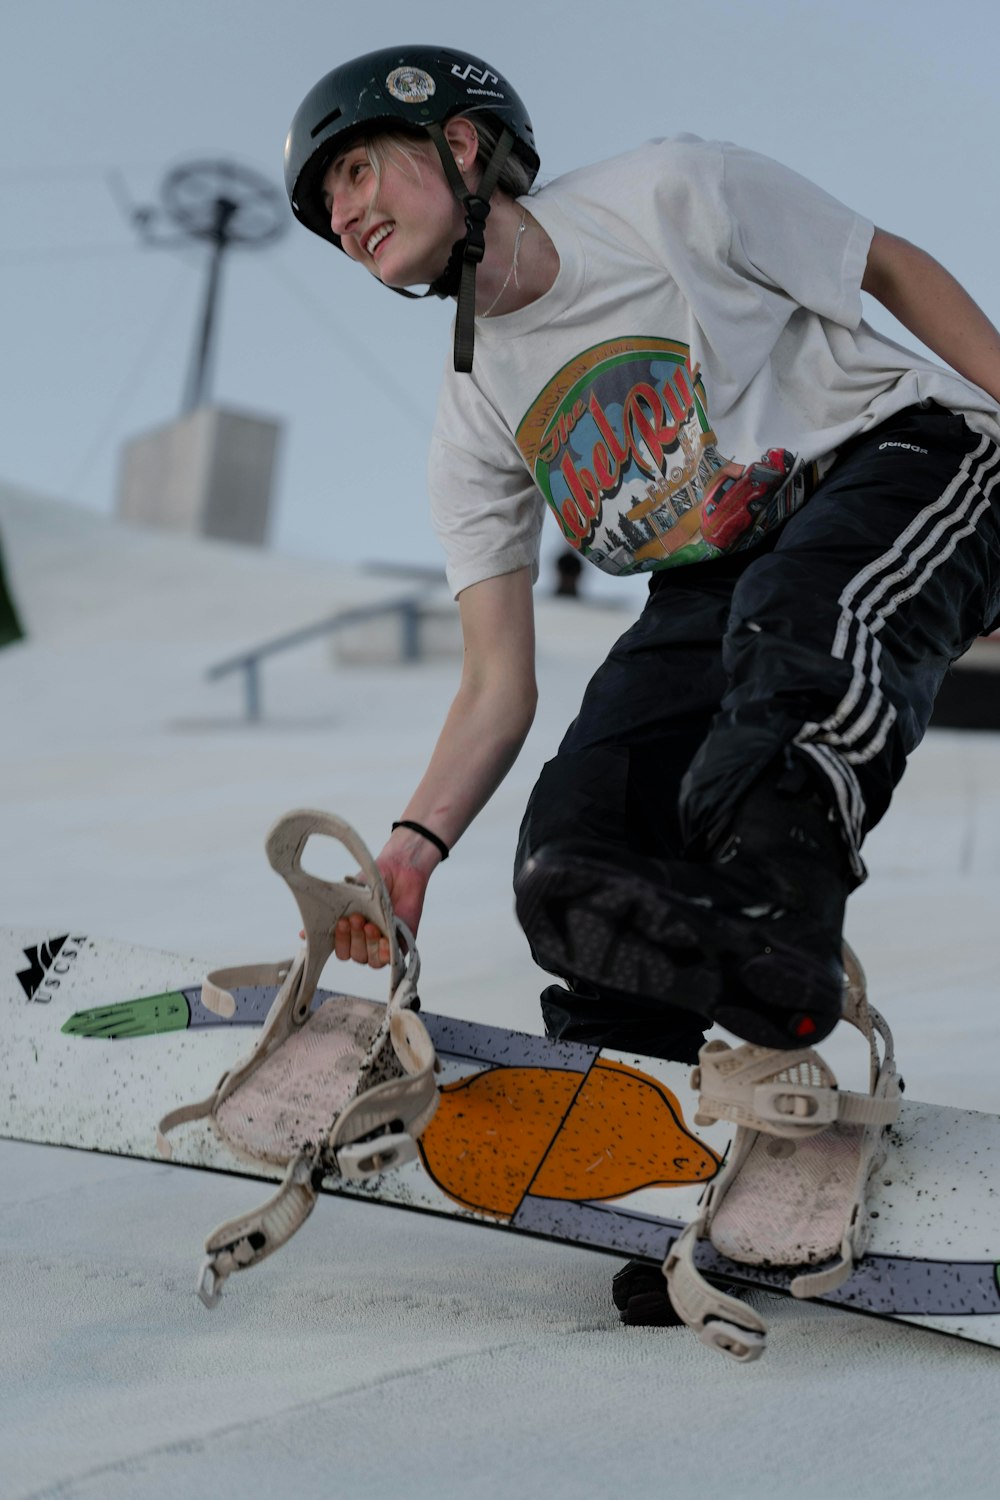 Un joven montando una tabla de snowboard en la parte superior de una rampa